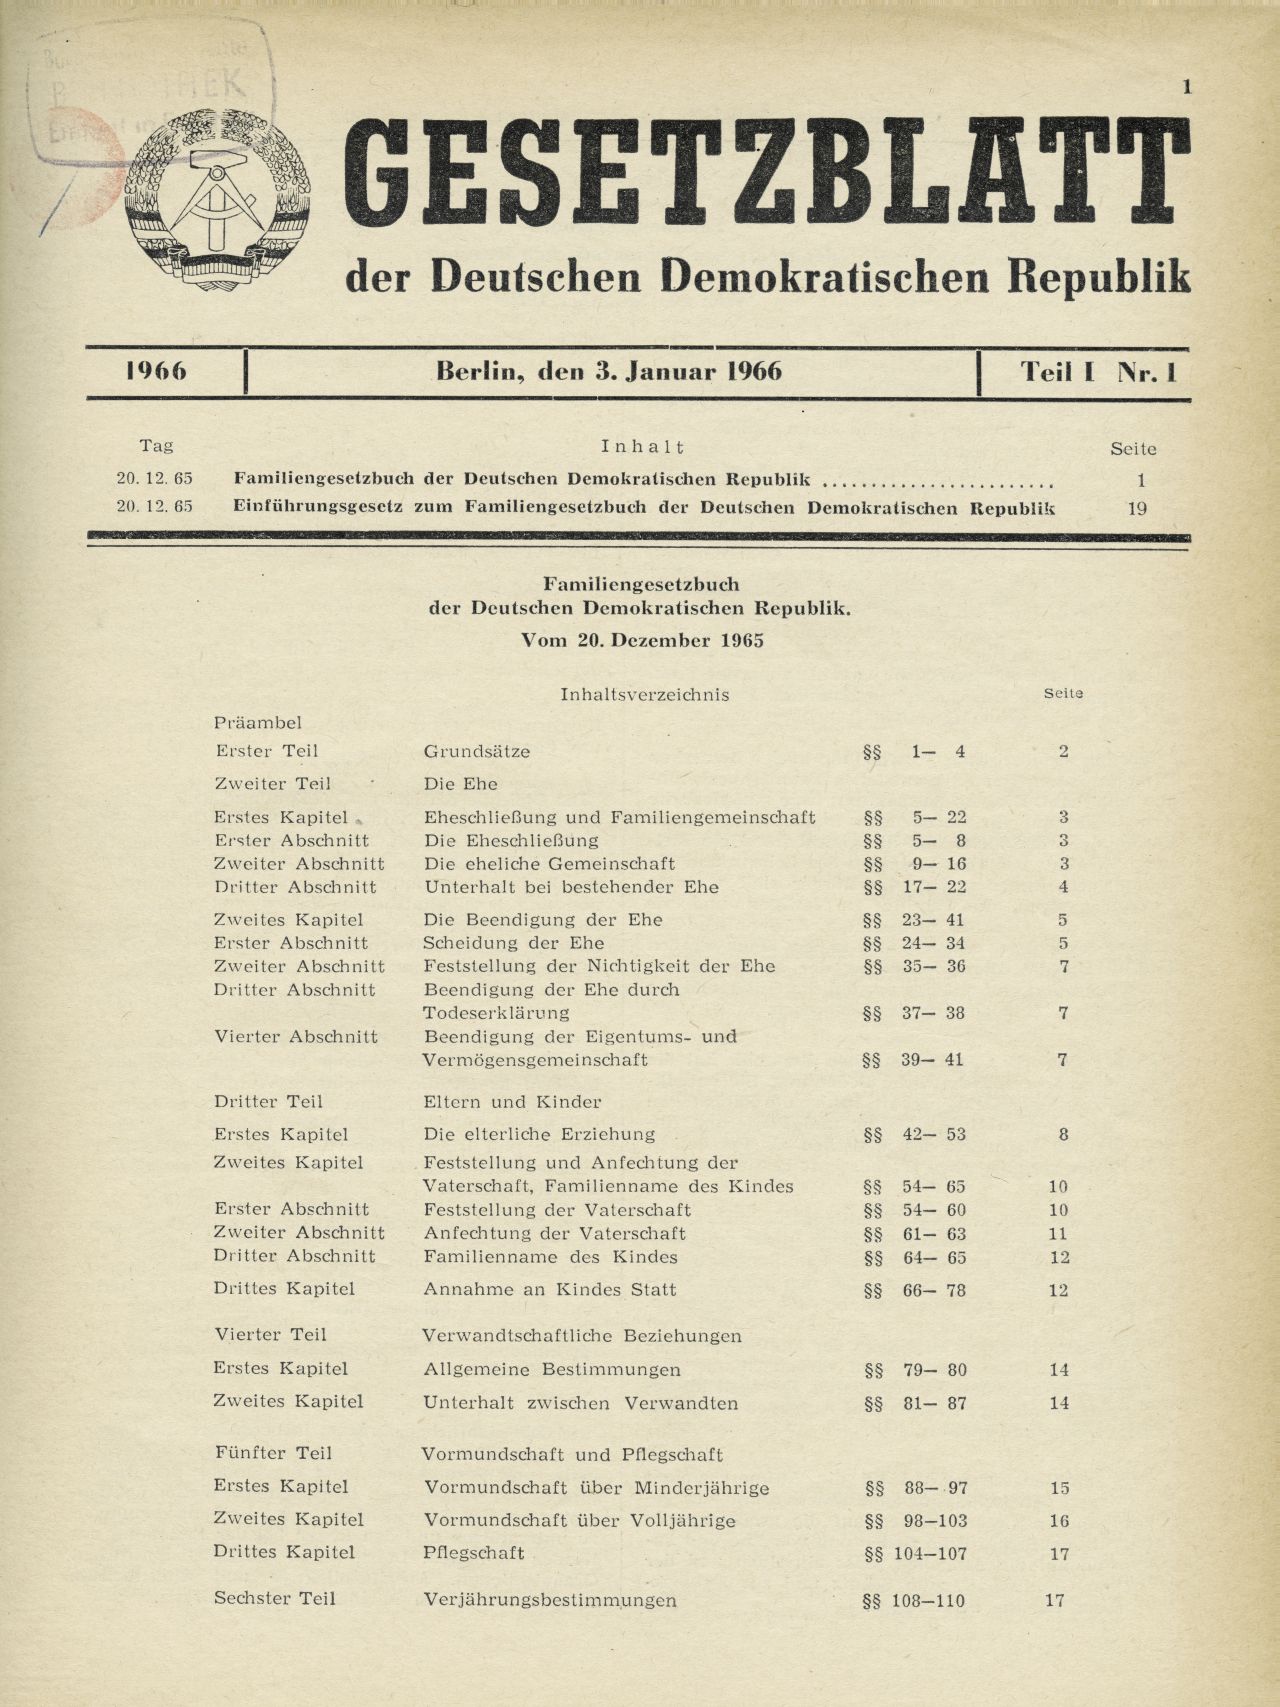 Inhaltsverzeichnis und Grundsätze des Familiengesetzbuches der DDR.